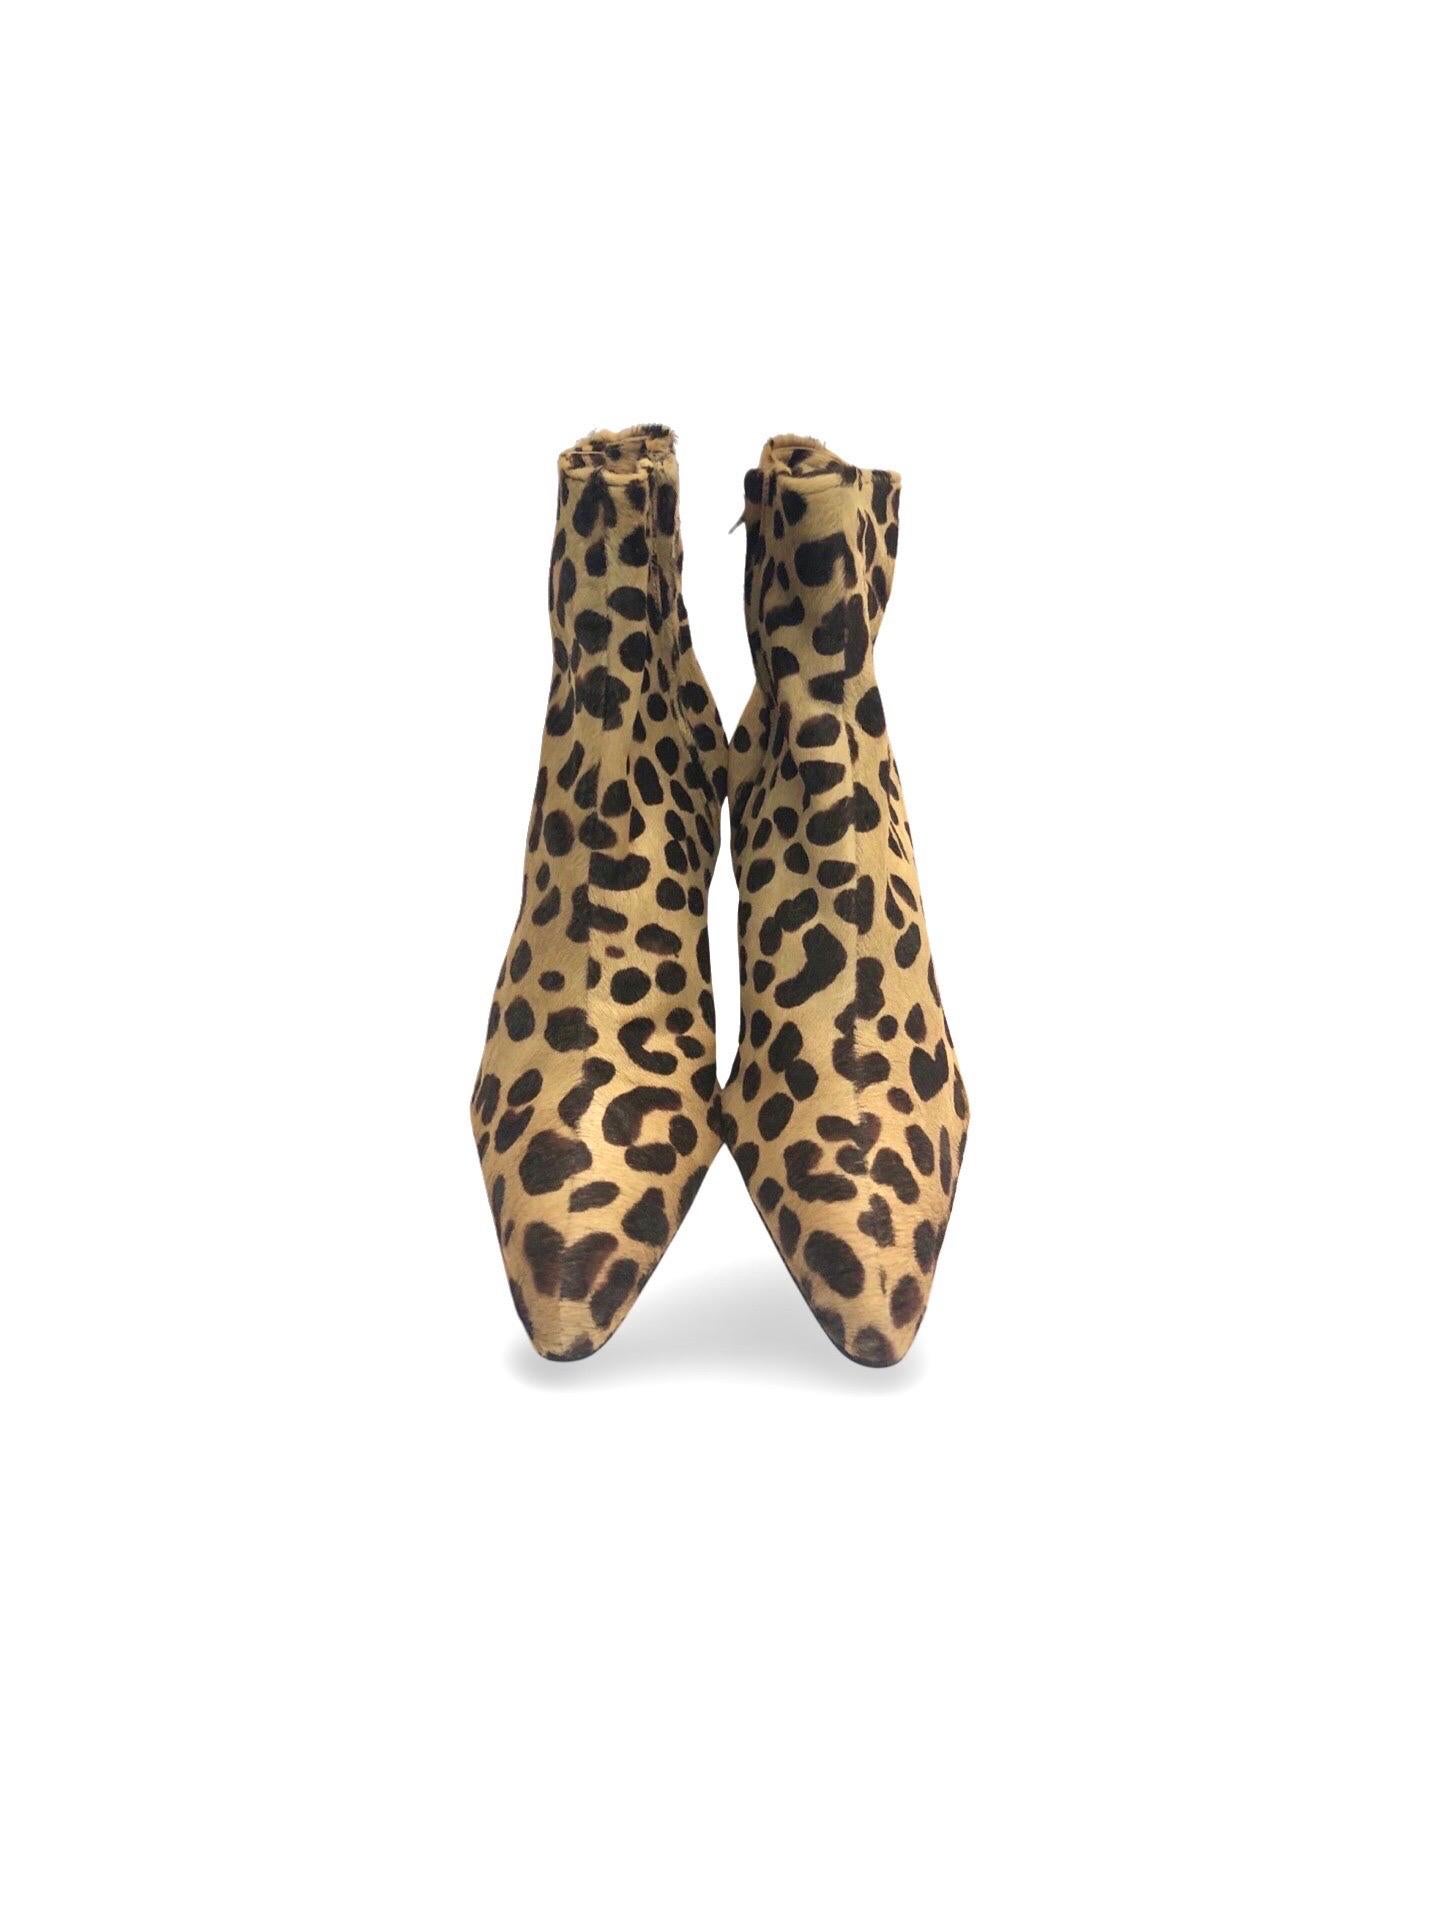 Bottes en cuir de crin de cheval à motif léopard Christian Dior by John Galliano. 

- Fermeture à glissière. 

- Ces bottes n'ont jamais été portées. Il fait la taille 38. 



